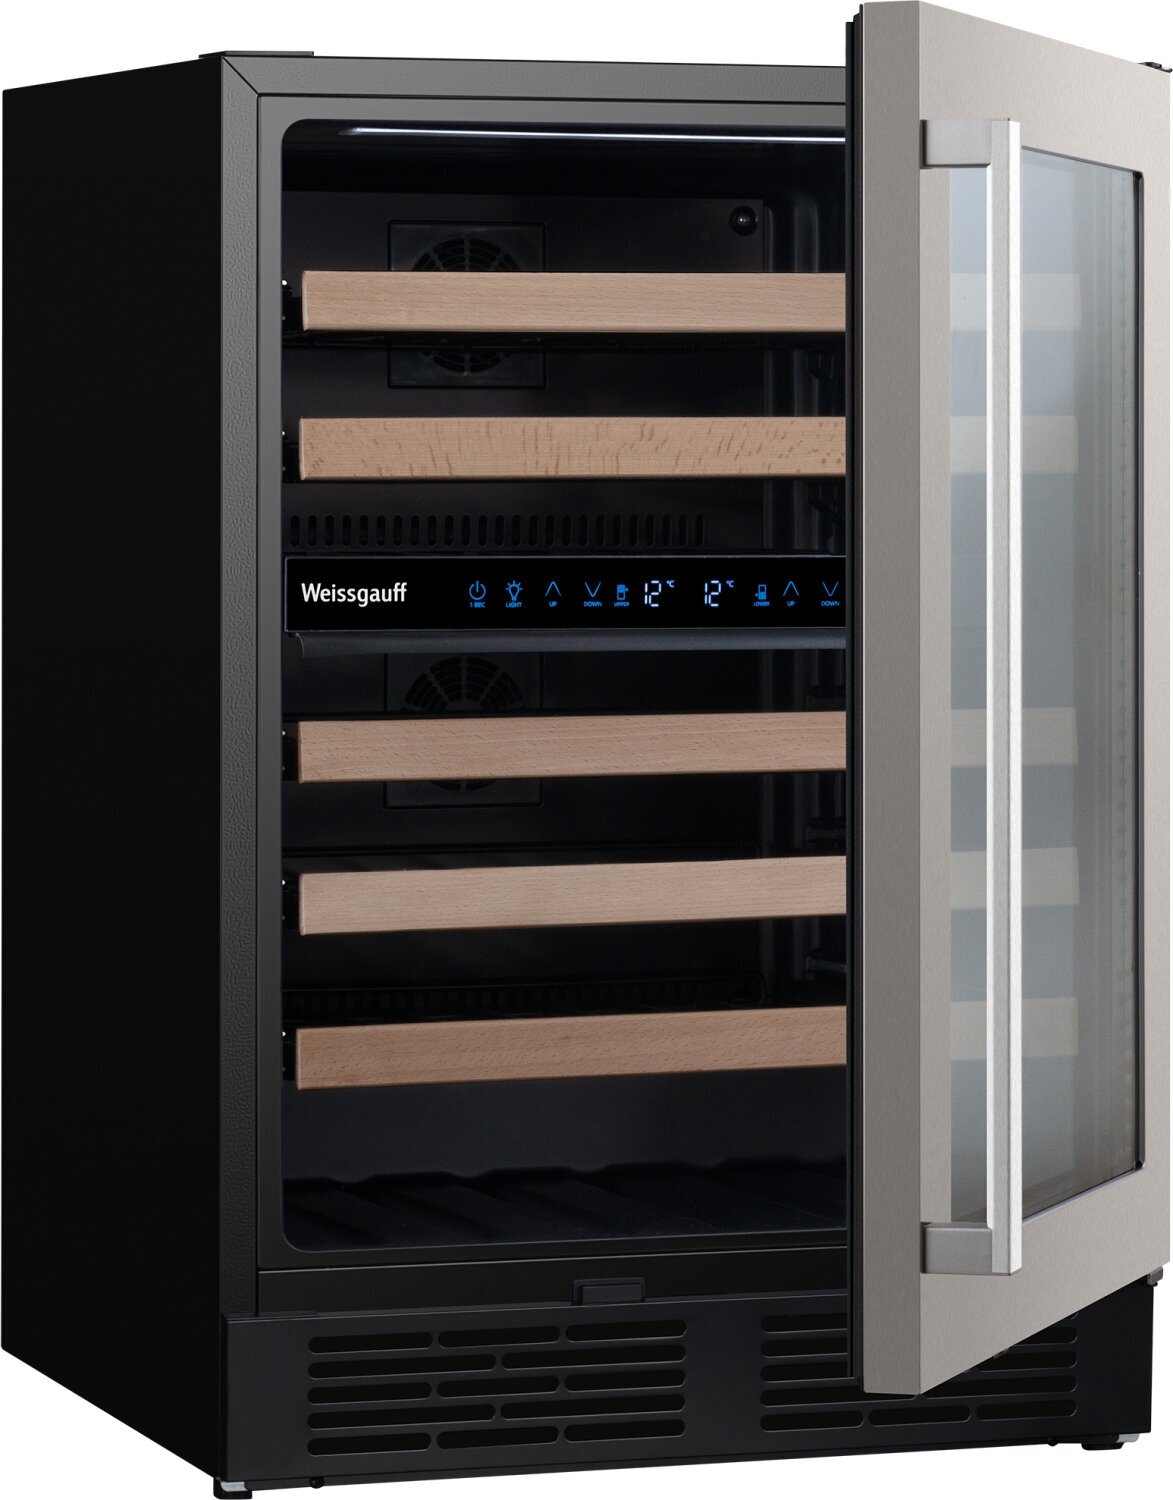 Встраиваемый винный холодильник Weissgauff WWC-46 Bottle Premium NoFrost Dual Zone 3 года гарантии, Полностью электронное управление, Перенавешиваемая дверь, Полки выполненные из дерева